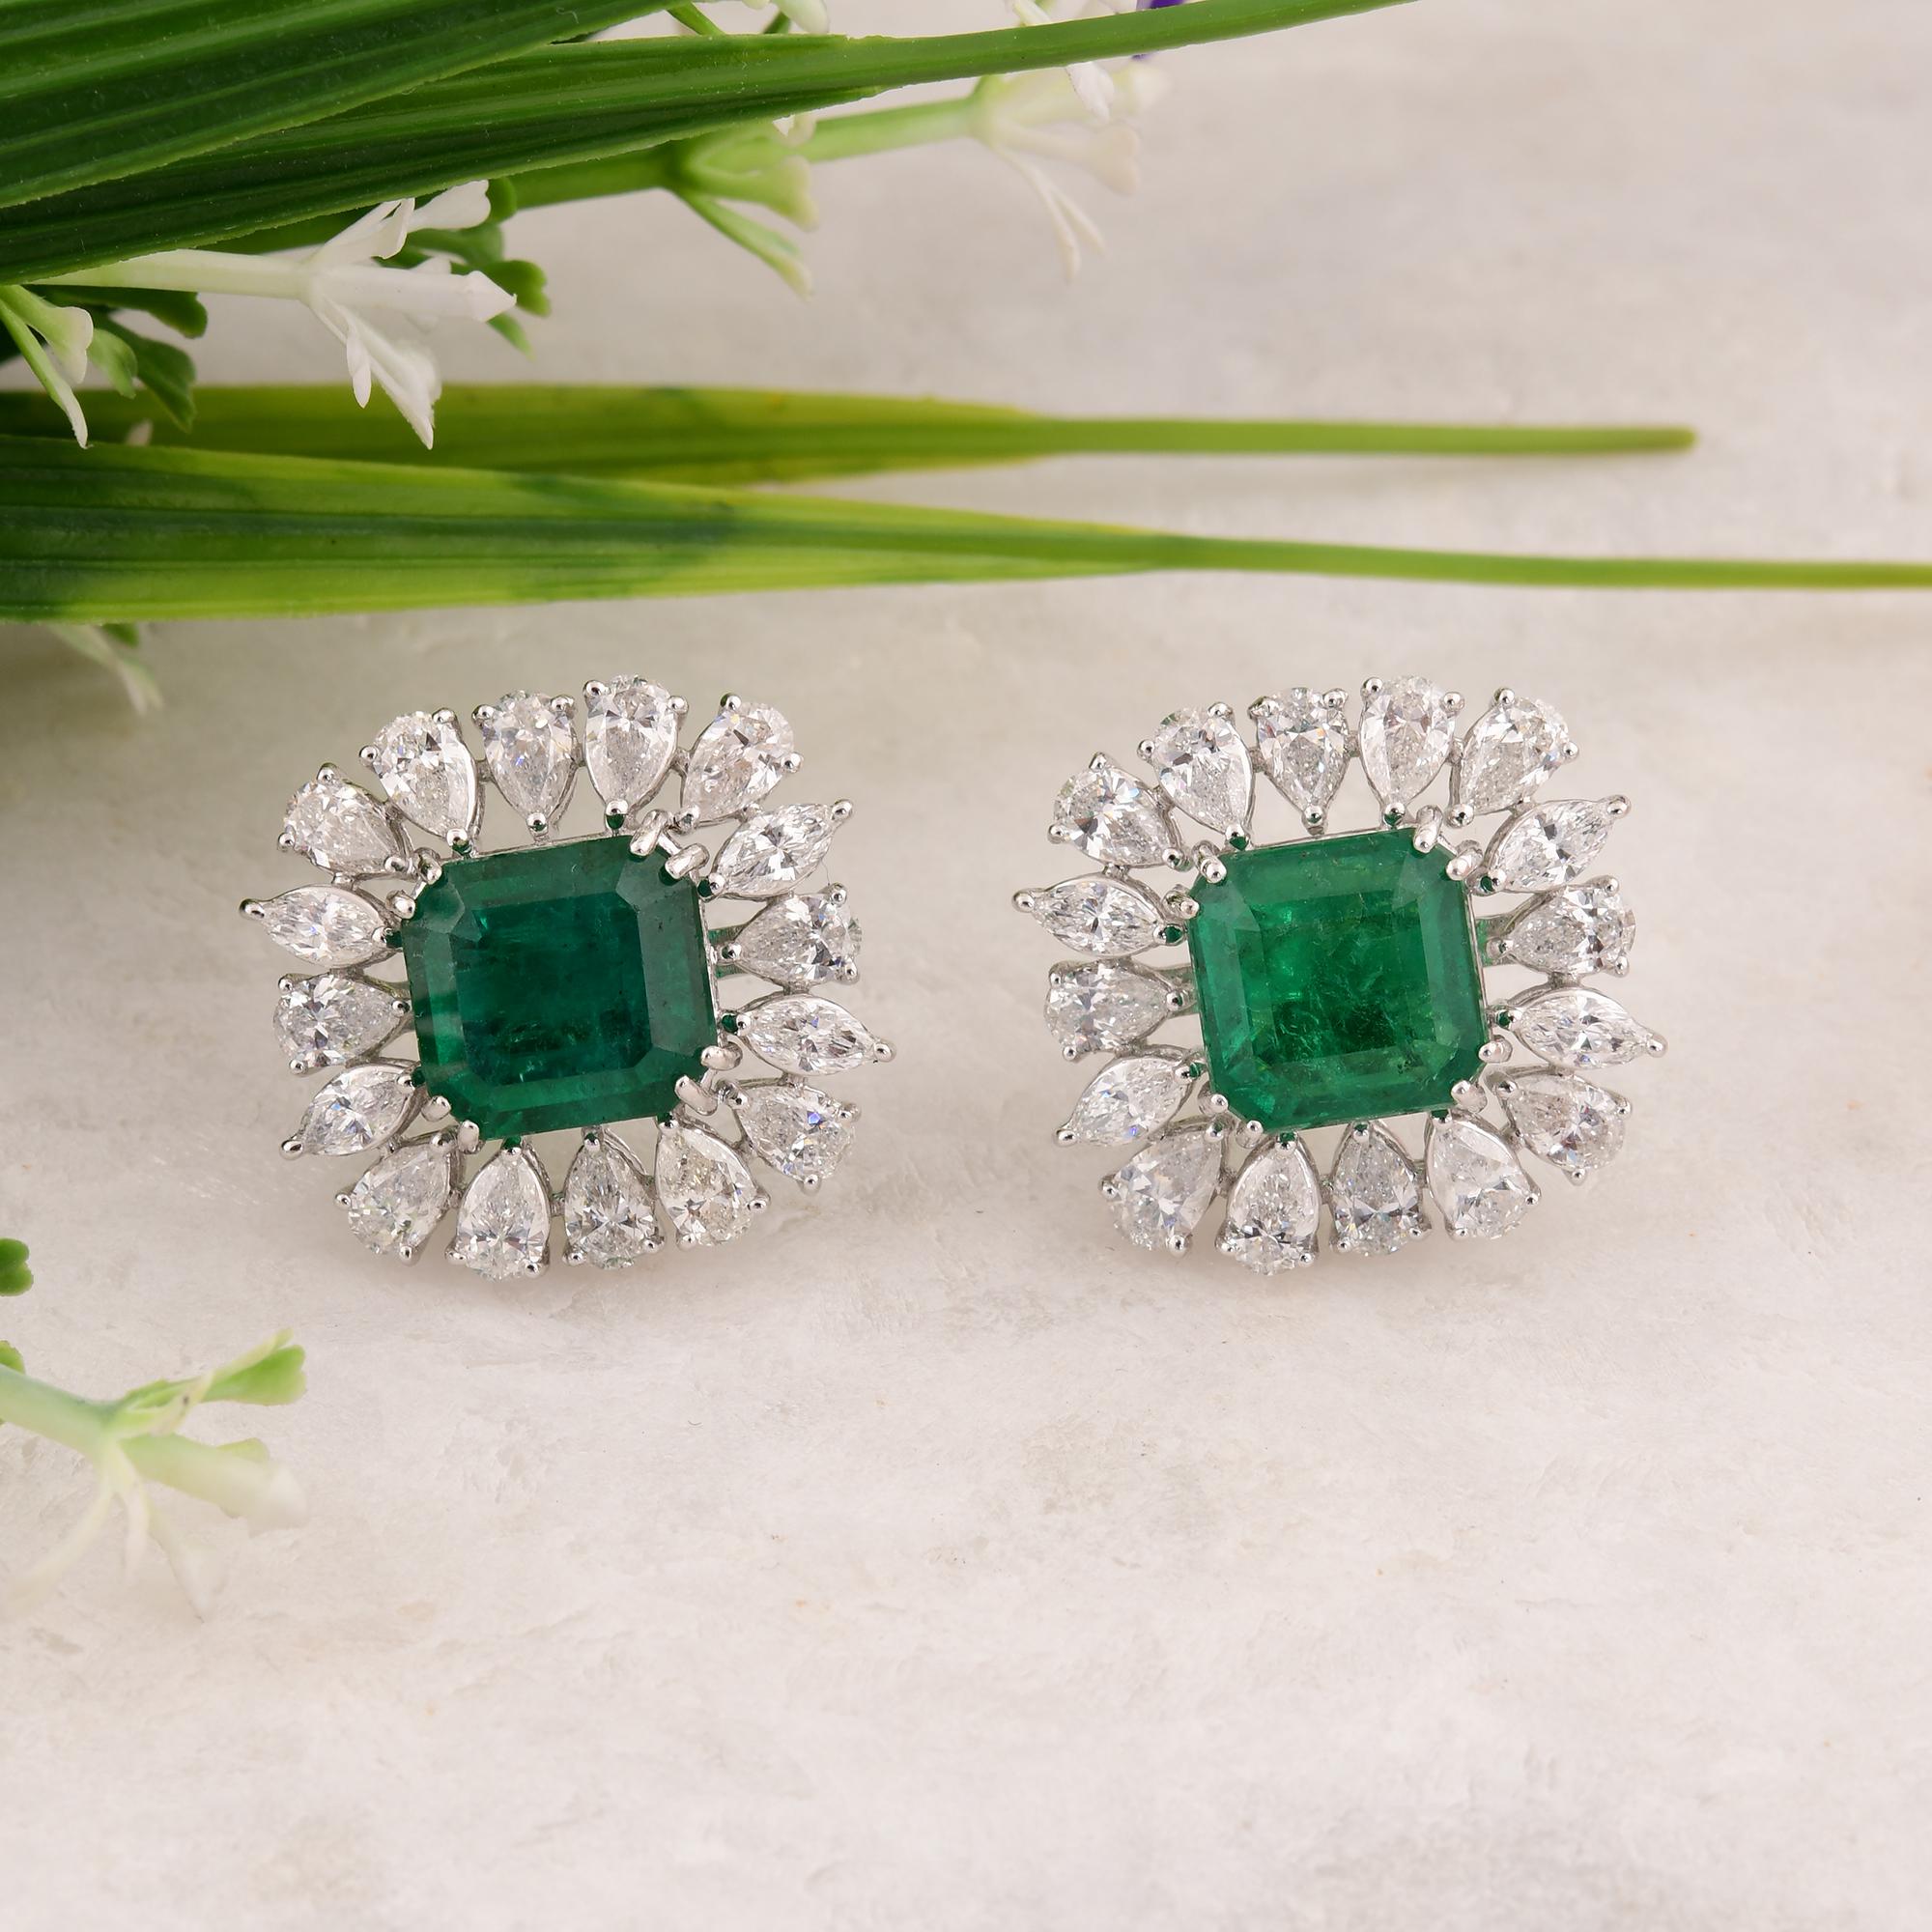 Pear Cut Zambian Emerald Gemstone Stud Earrings Pear Diamond 18 Karat White Gold Jewelry For Sale